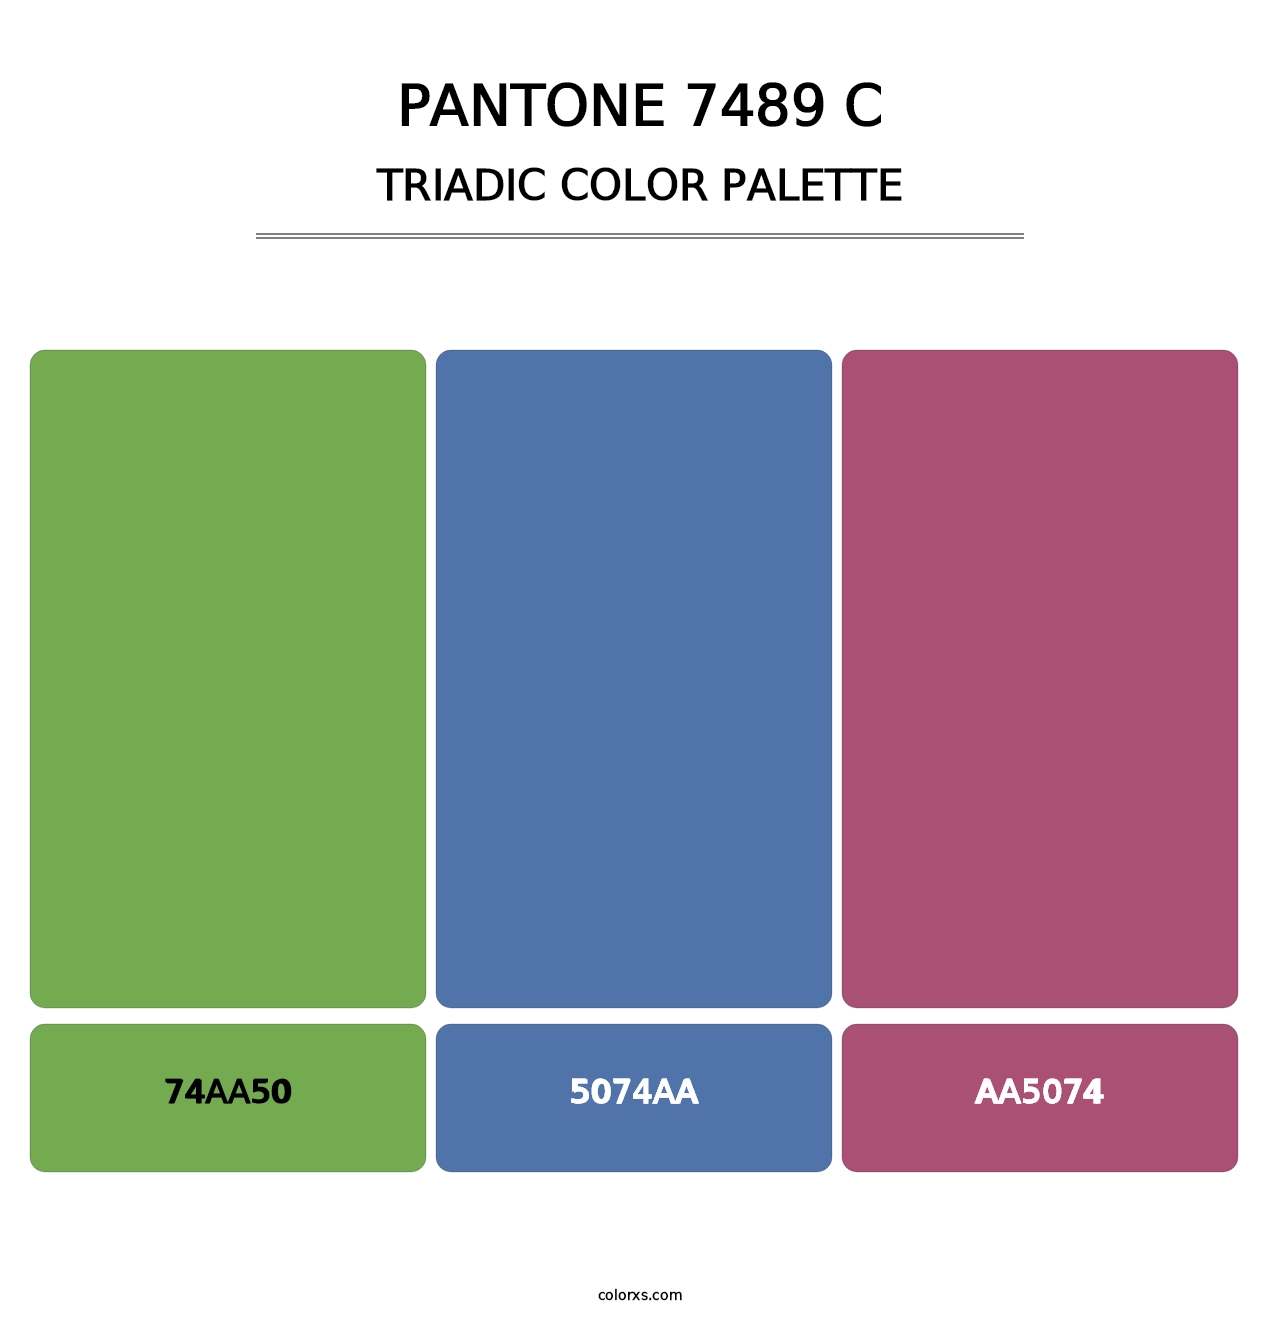 PANTONE 7489 C - Triadic Color Palette